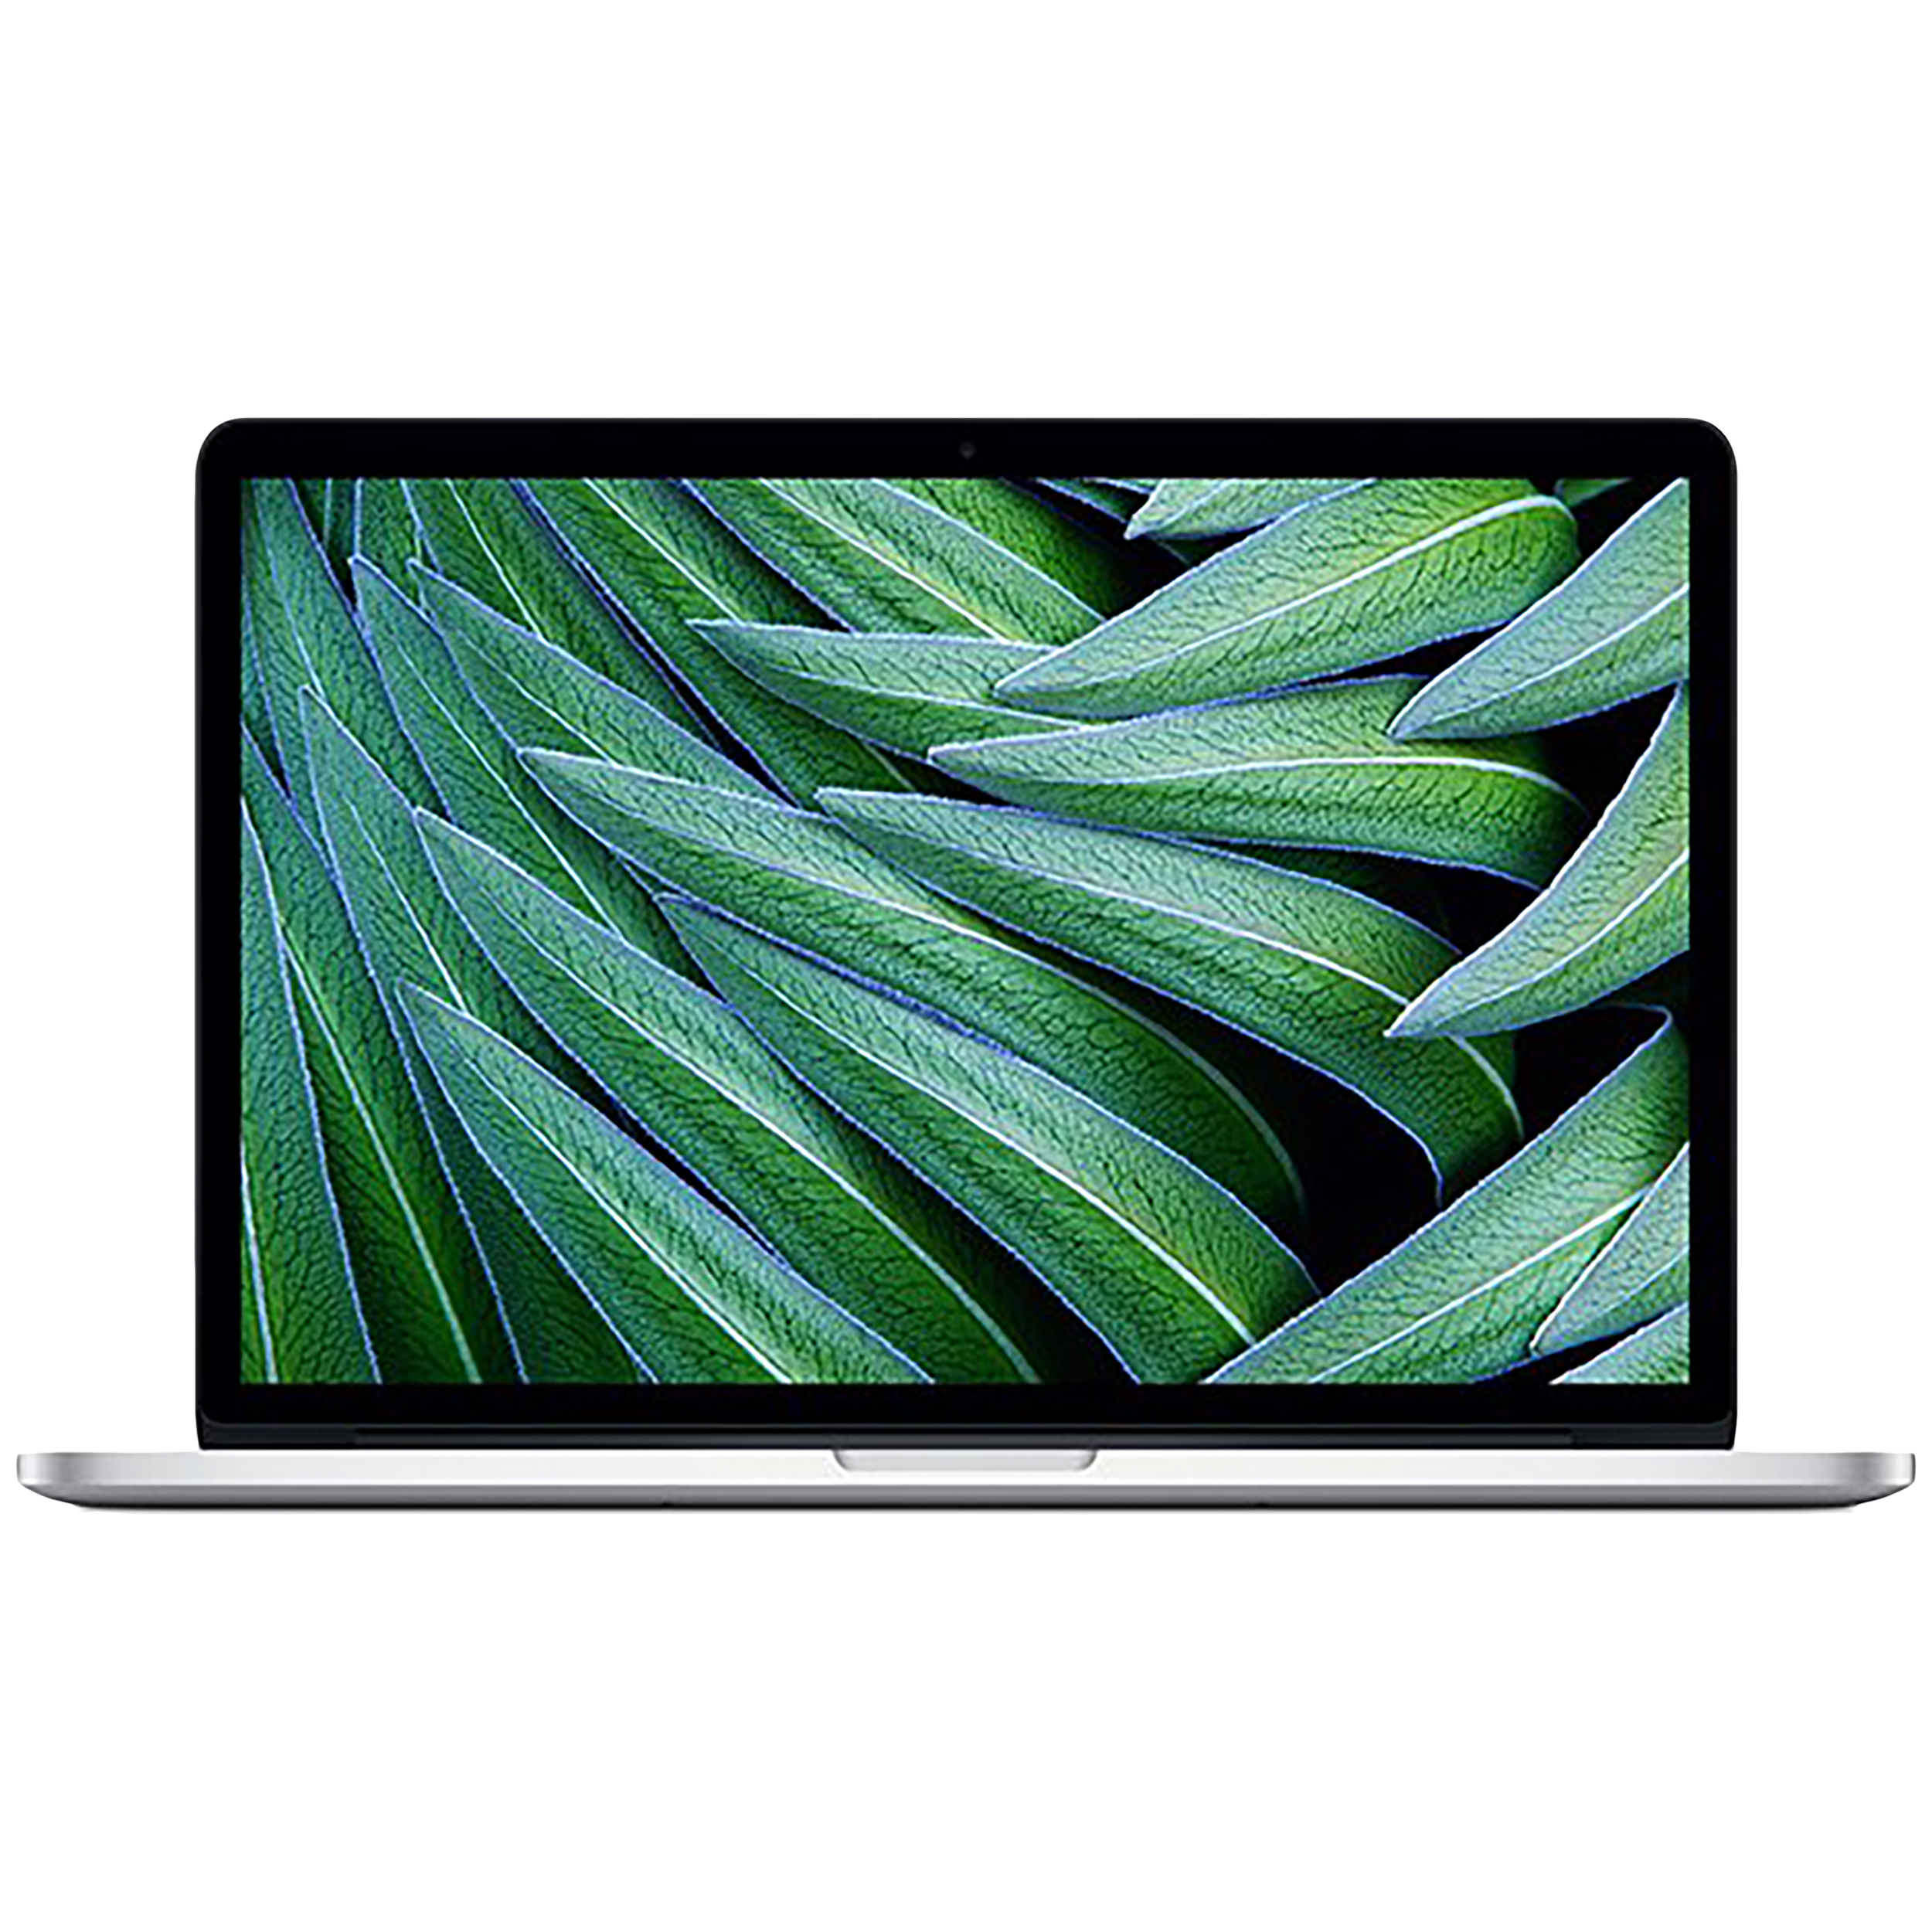 لپ تاپ 13 اینچی اپل مدل MacBook Pro ME866 2013 با صفحه نمایش رتینا